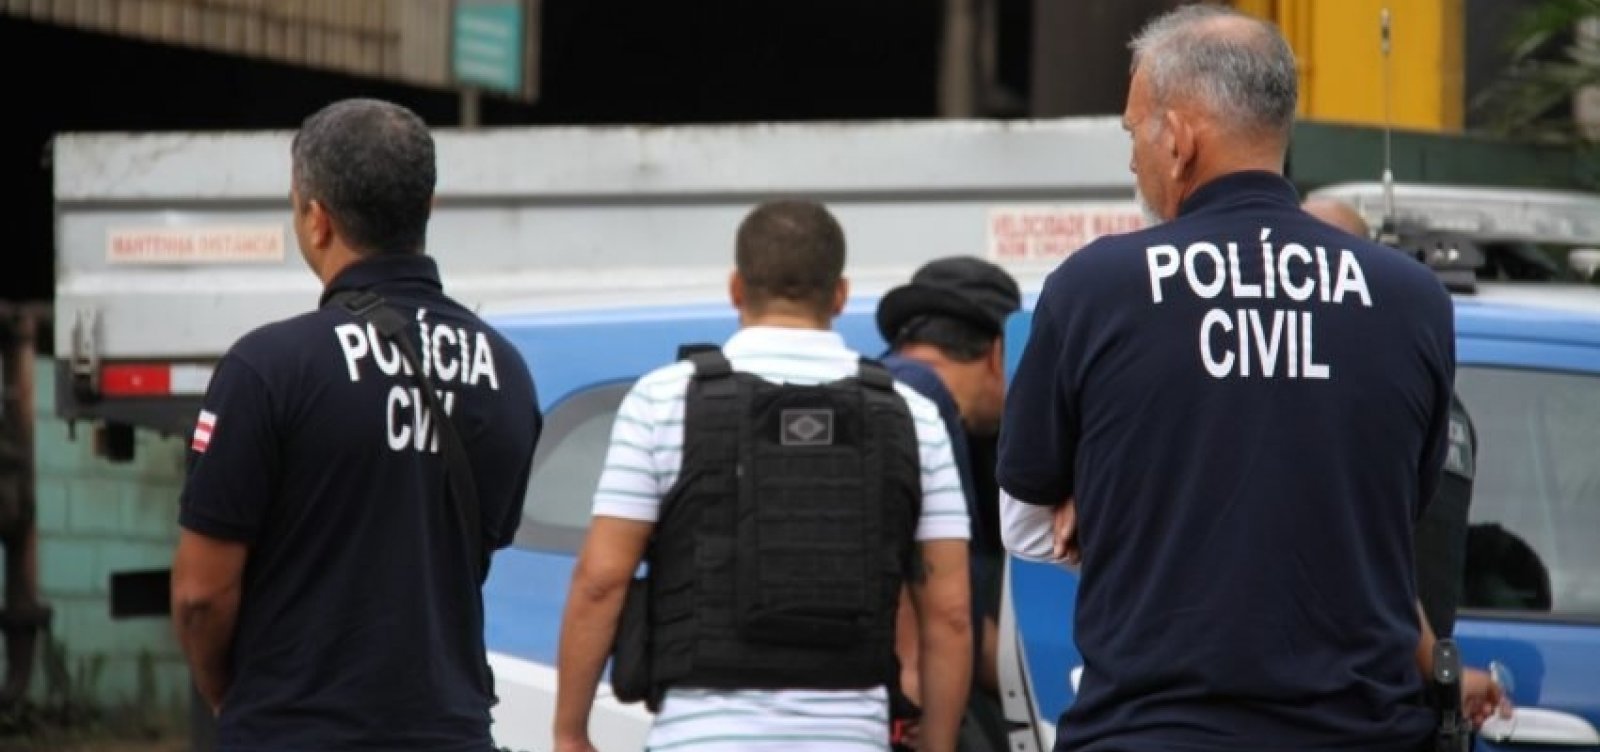 Polícia faz operação para prender quadrilha de tráfico interestadual de drogas 